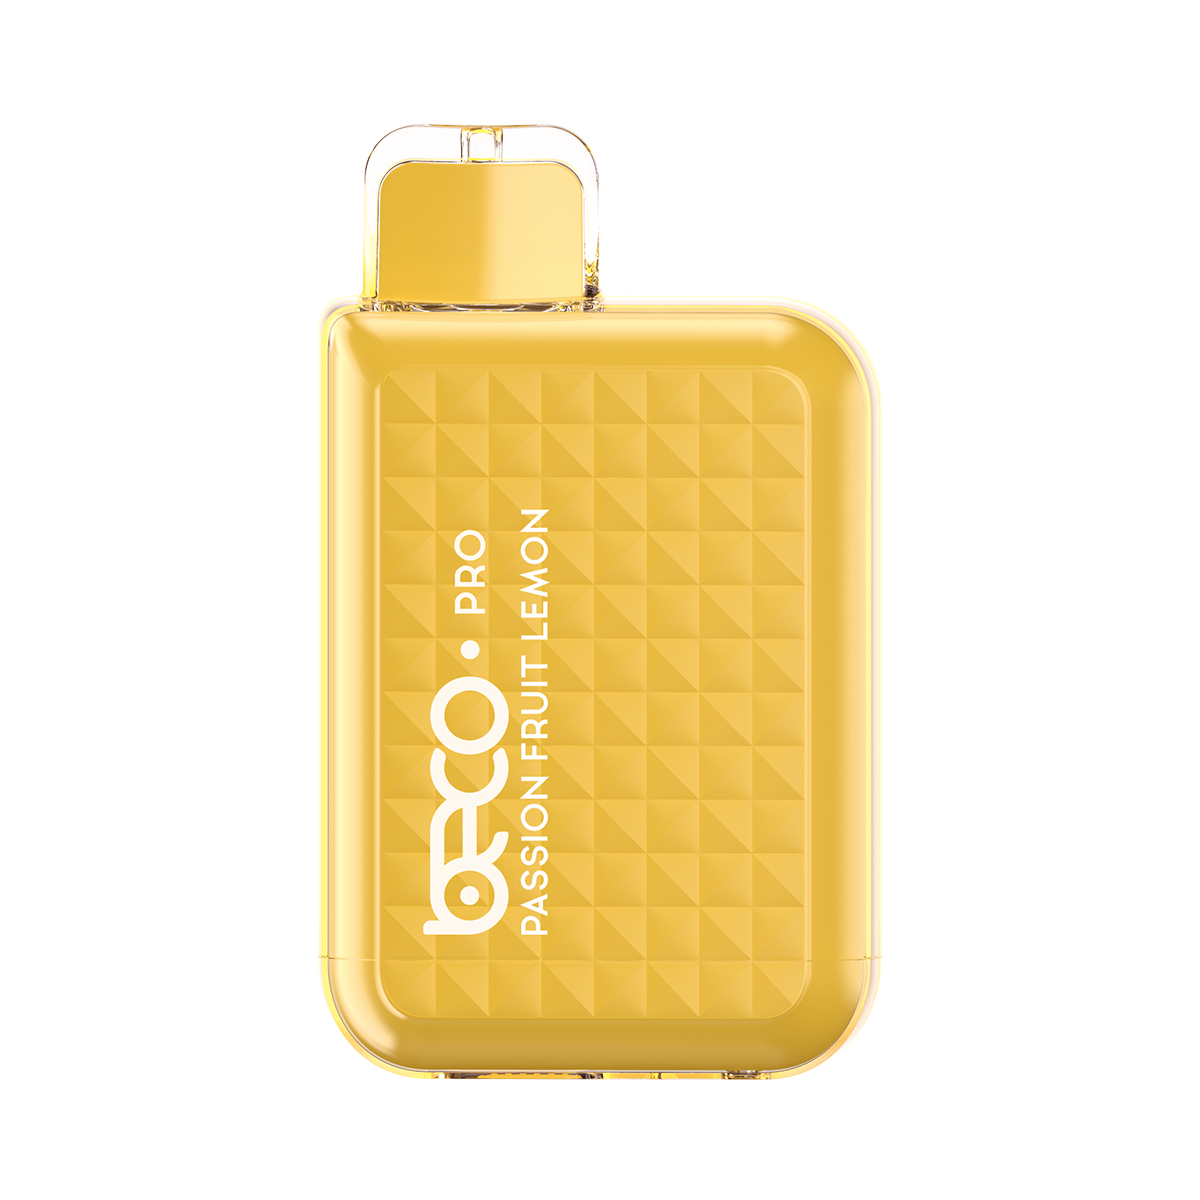 Beco Pro 6000 Disposable Vape - Fruityvapor.com